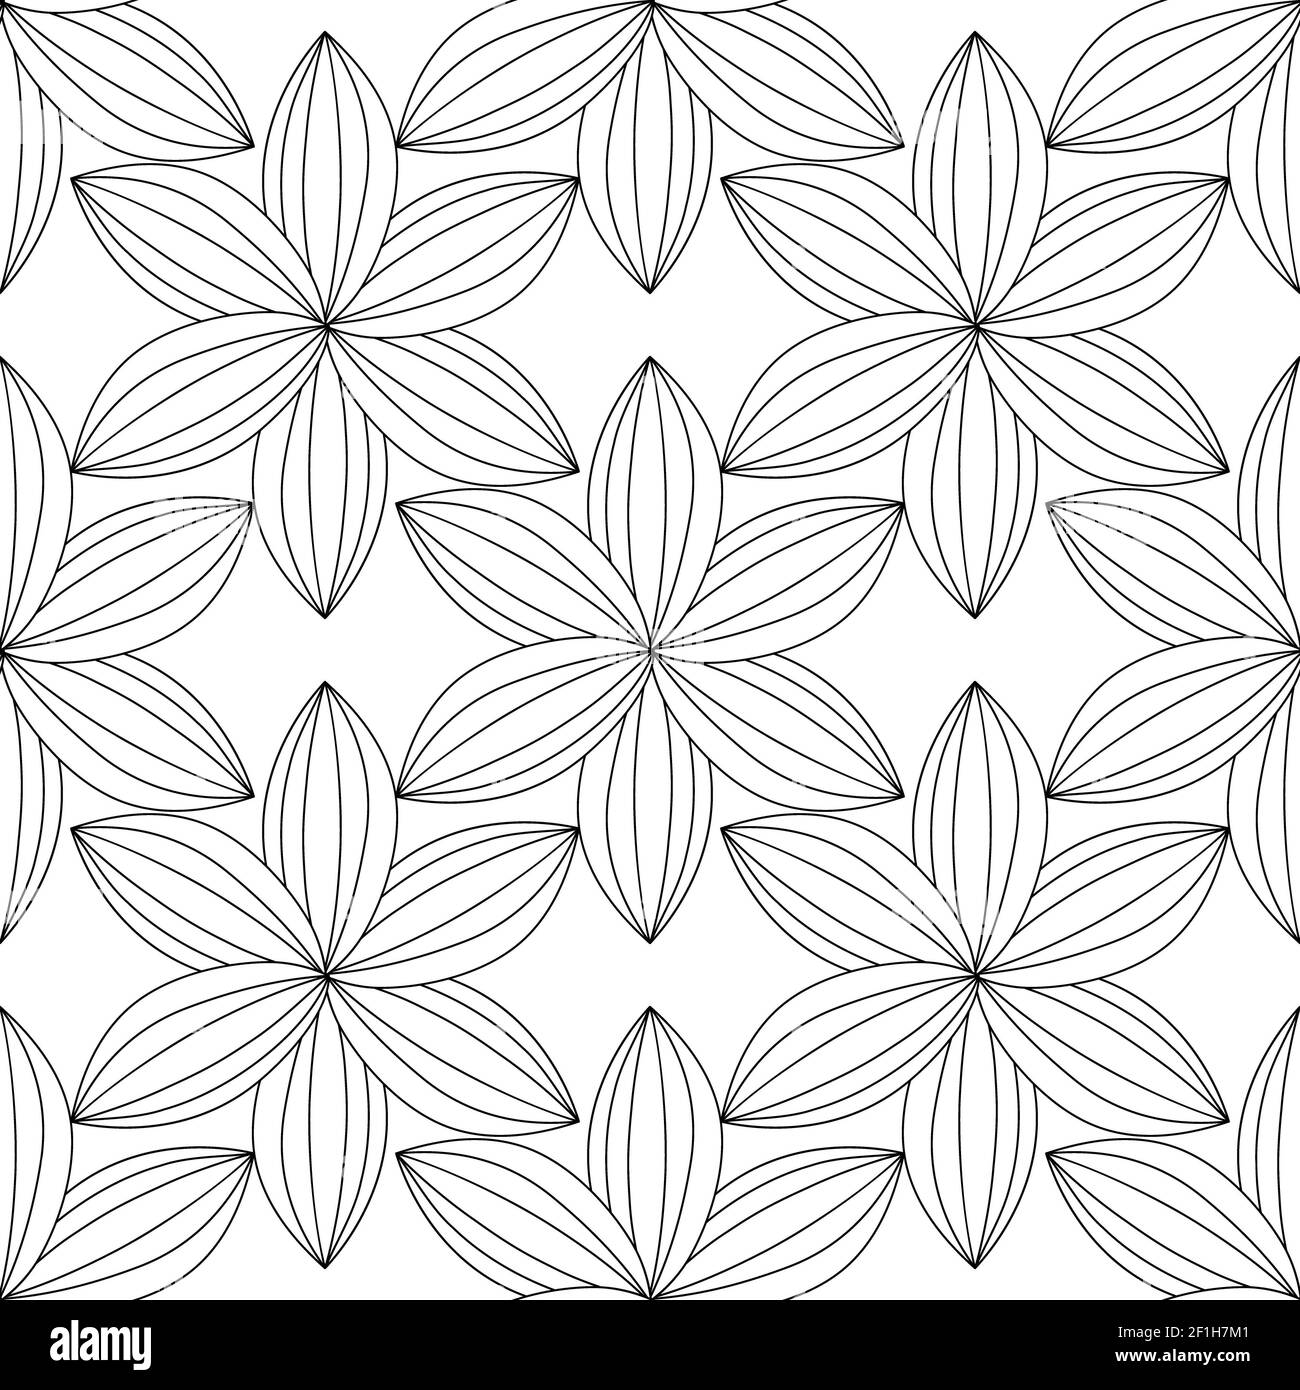 Vektor nahtlose schwarz weiß abstraktes Muster Stockfoto